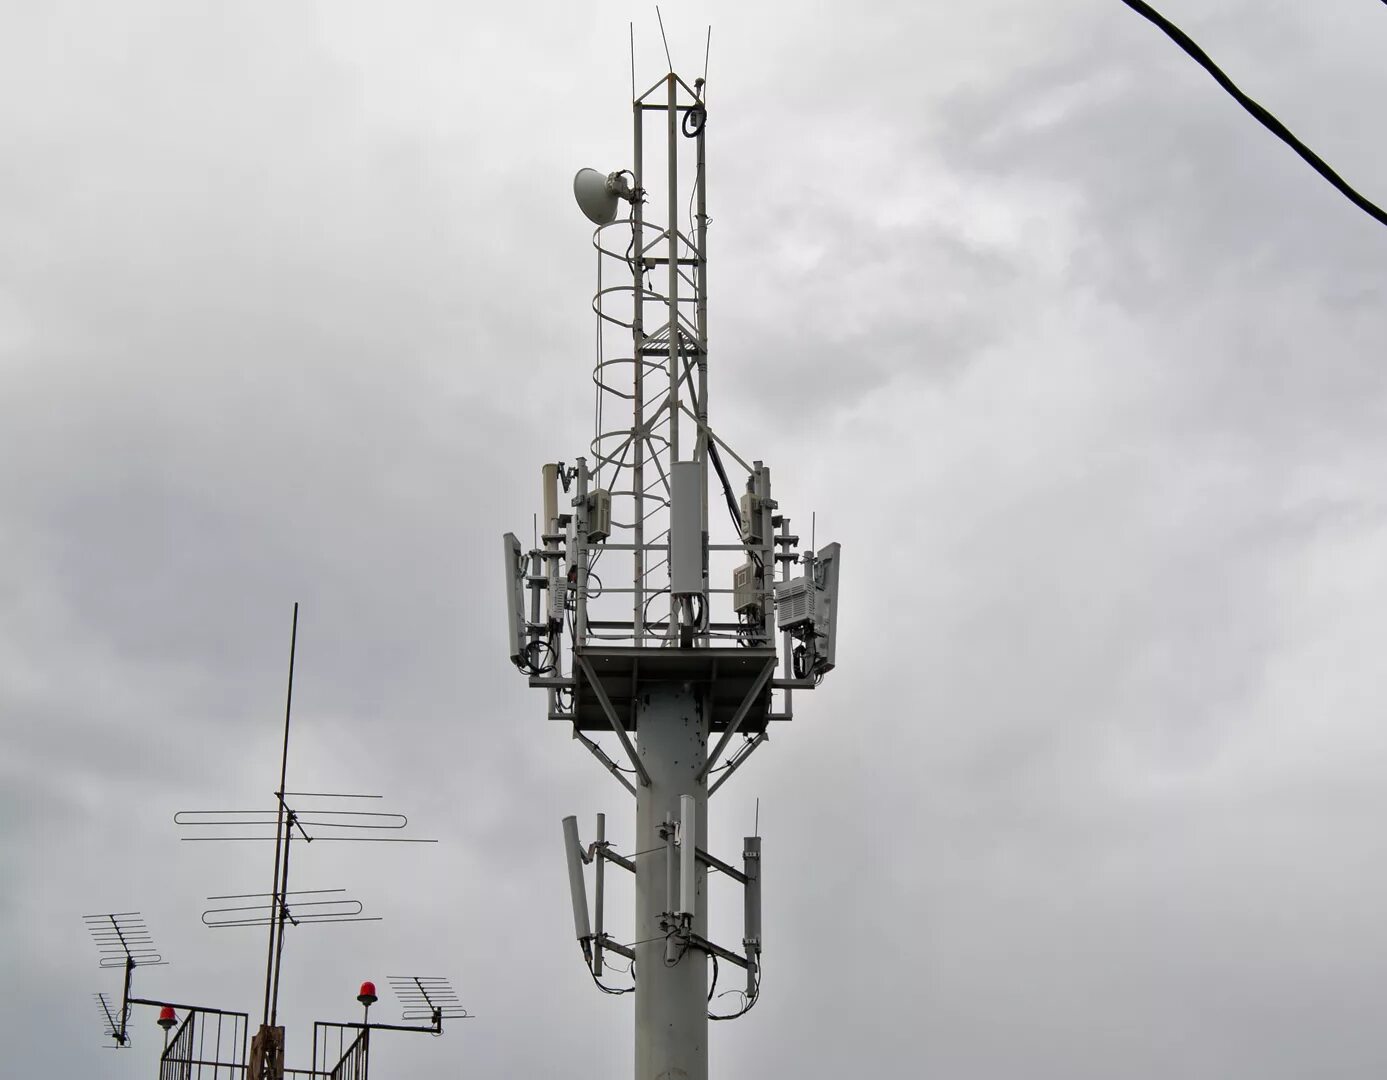 Мобильные станции связи. Базовая станция 4g LTE. Базовая станция сотовой связи LTE. Базовые станции сотовой связи стандарта 4g/LTE. Антенна базовой станции 4g LTE.